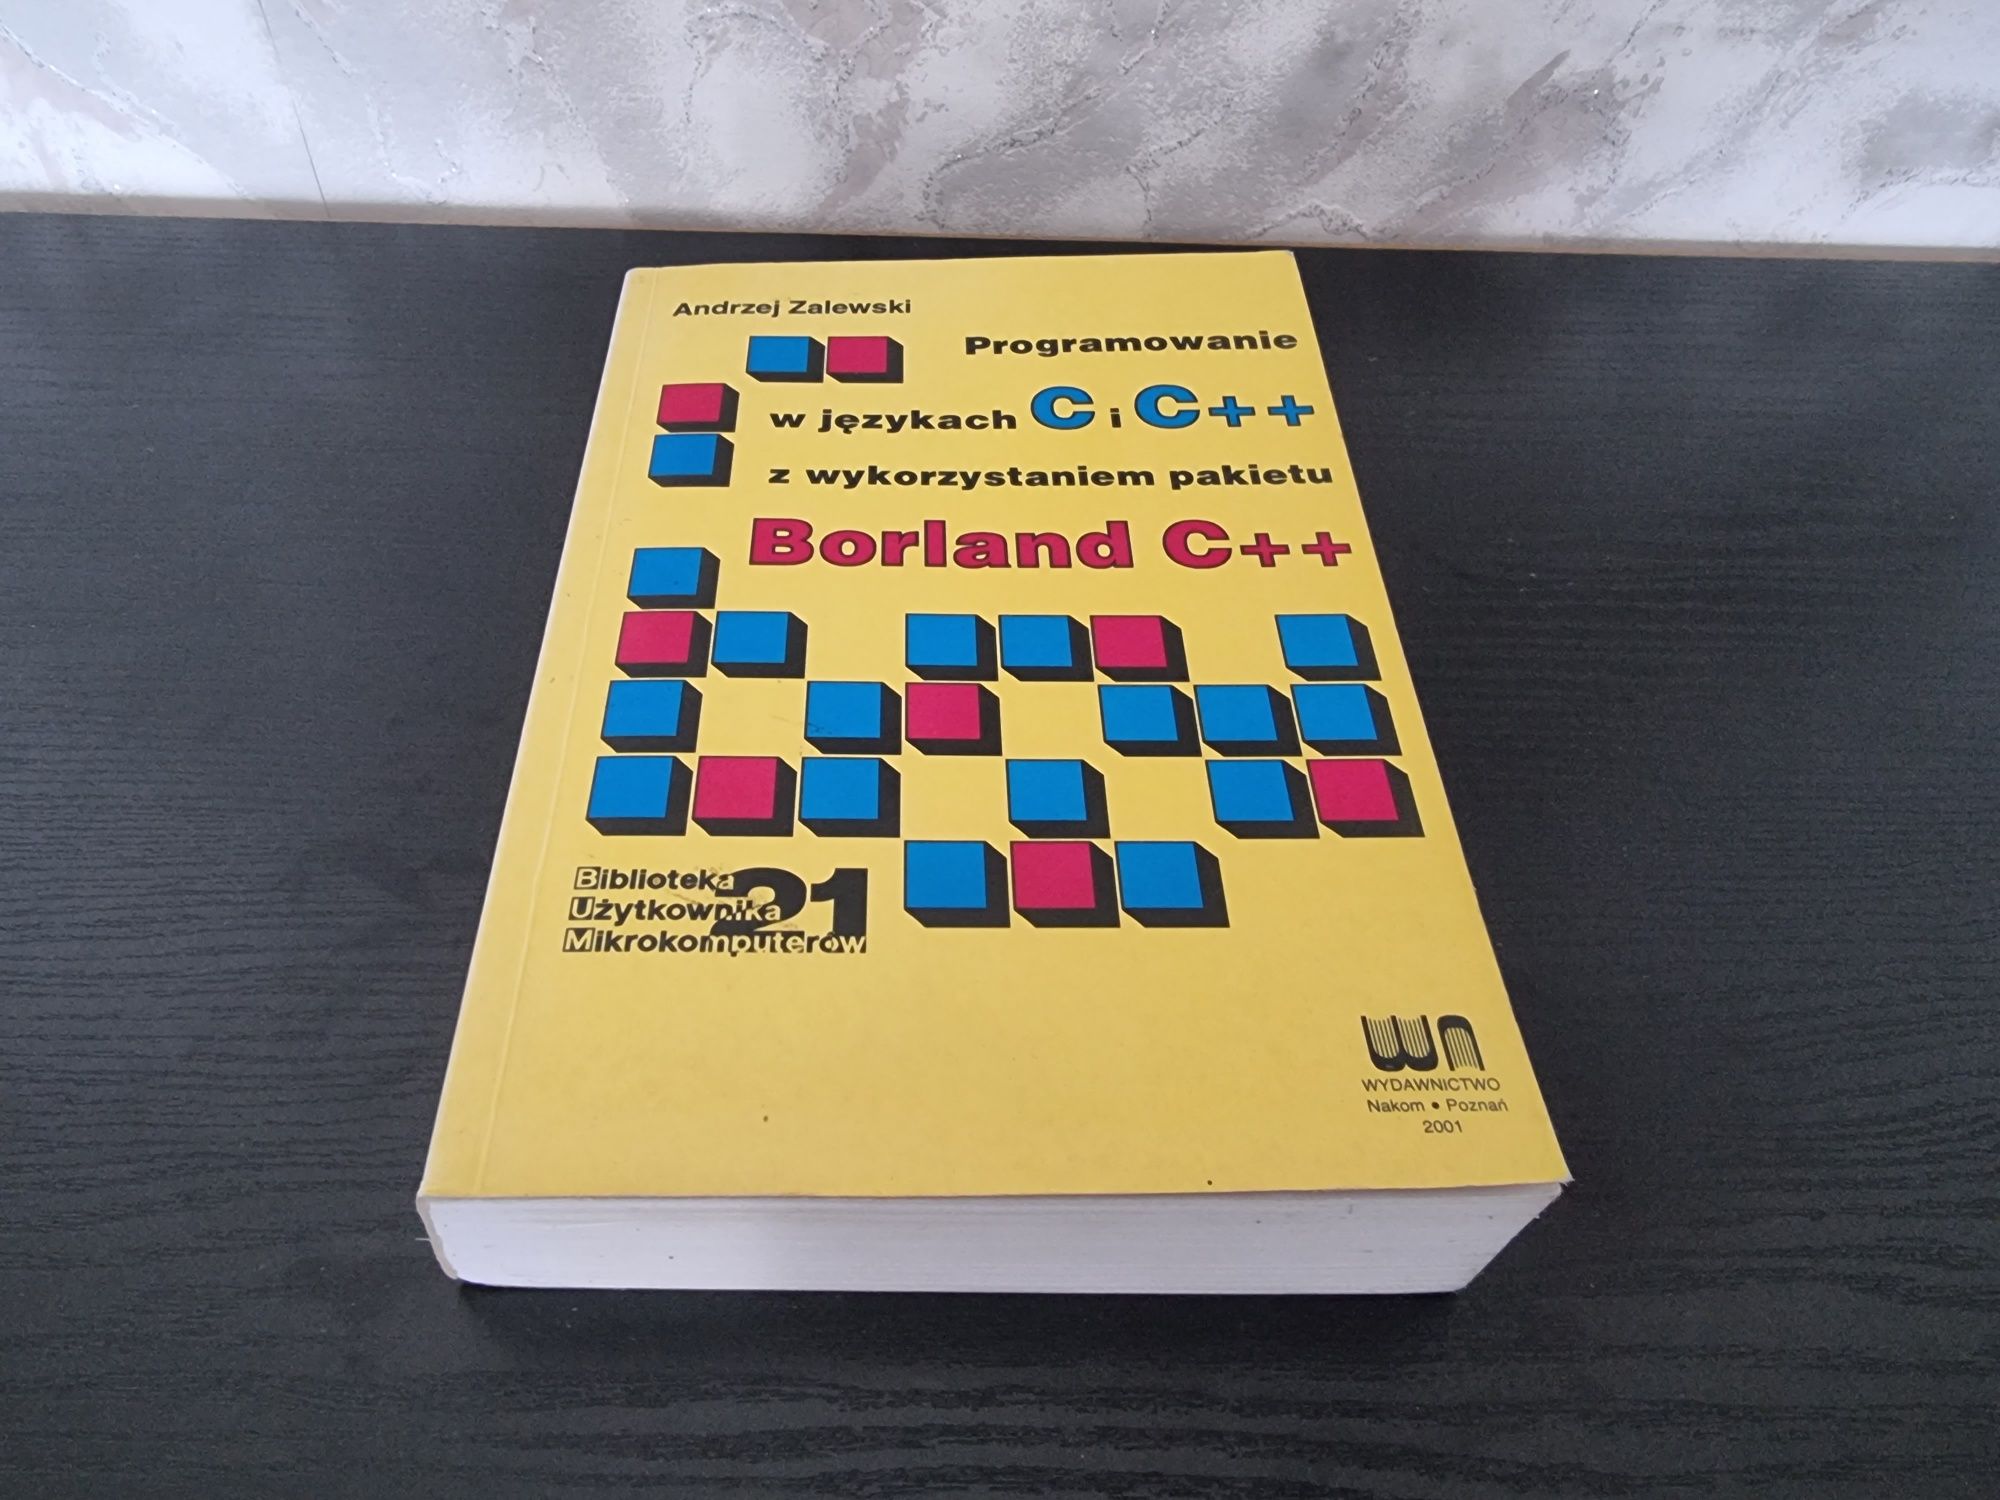 Zalewski, Programowanie w językach C i C++ w Borland C++